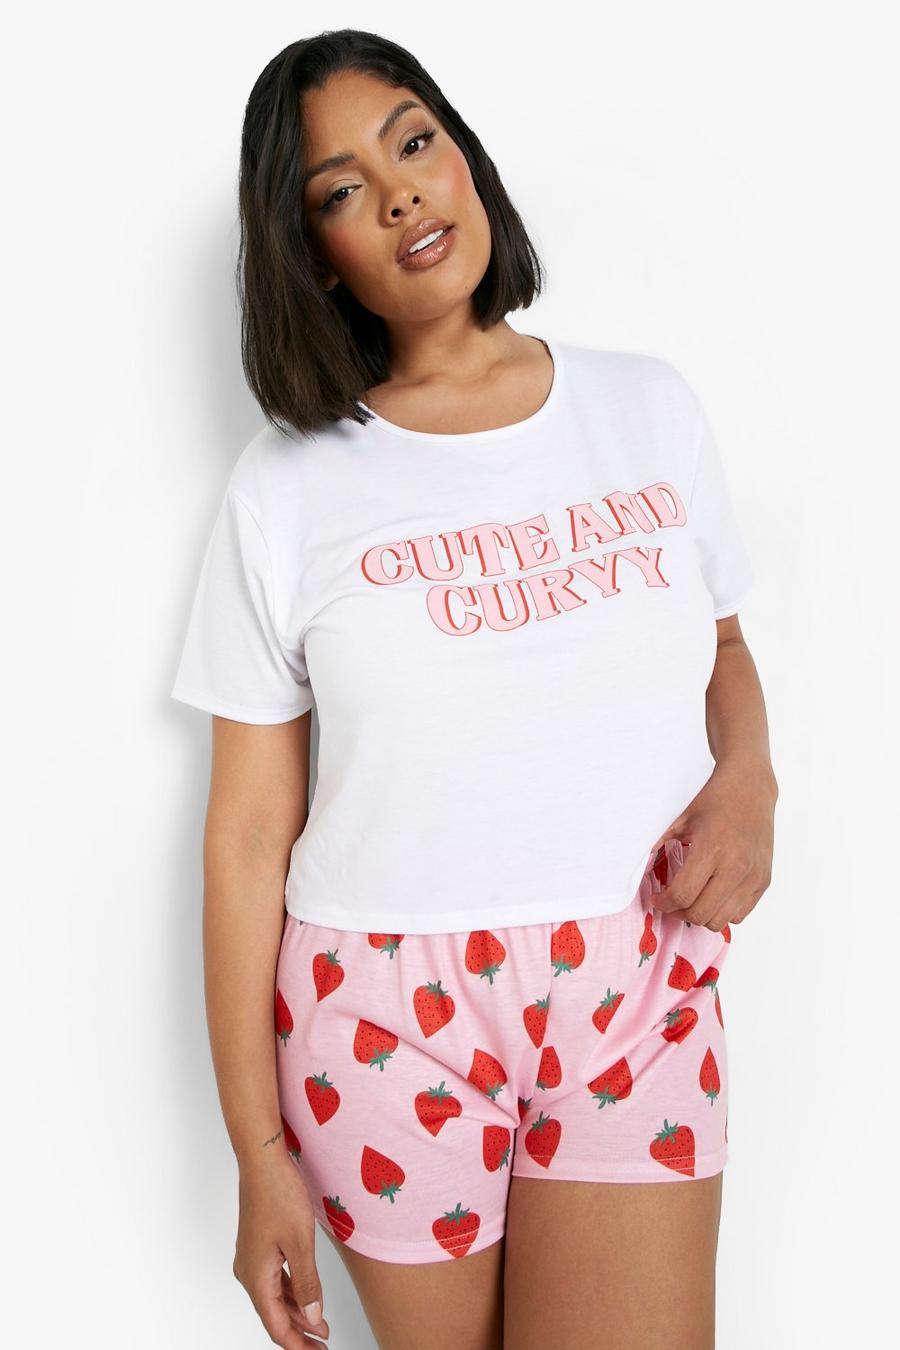 Set pigiama corto Plus Size con scritta Cute And Curvy, White bianco